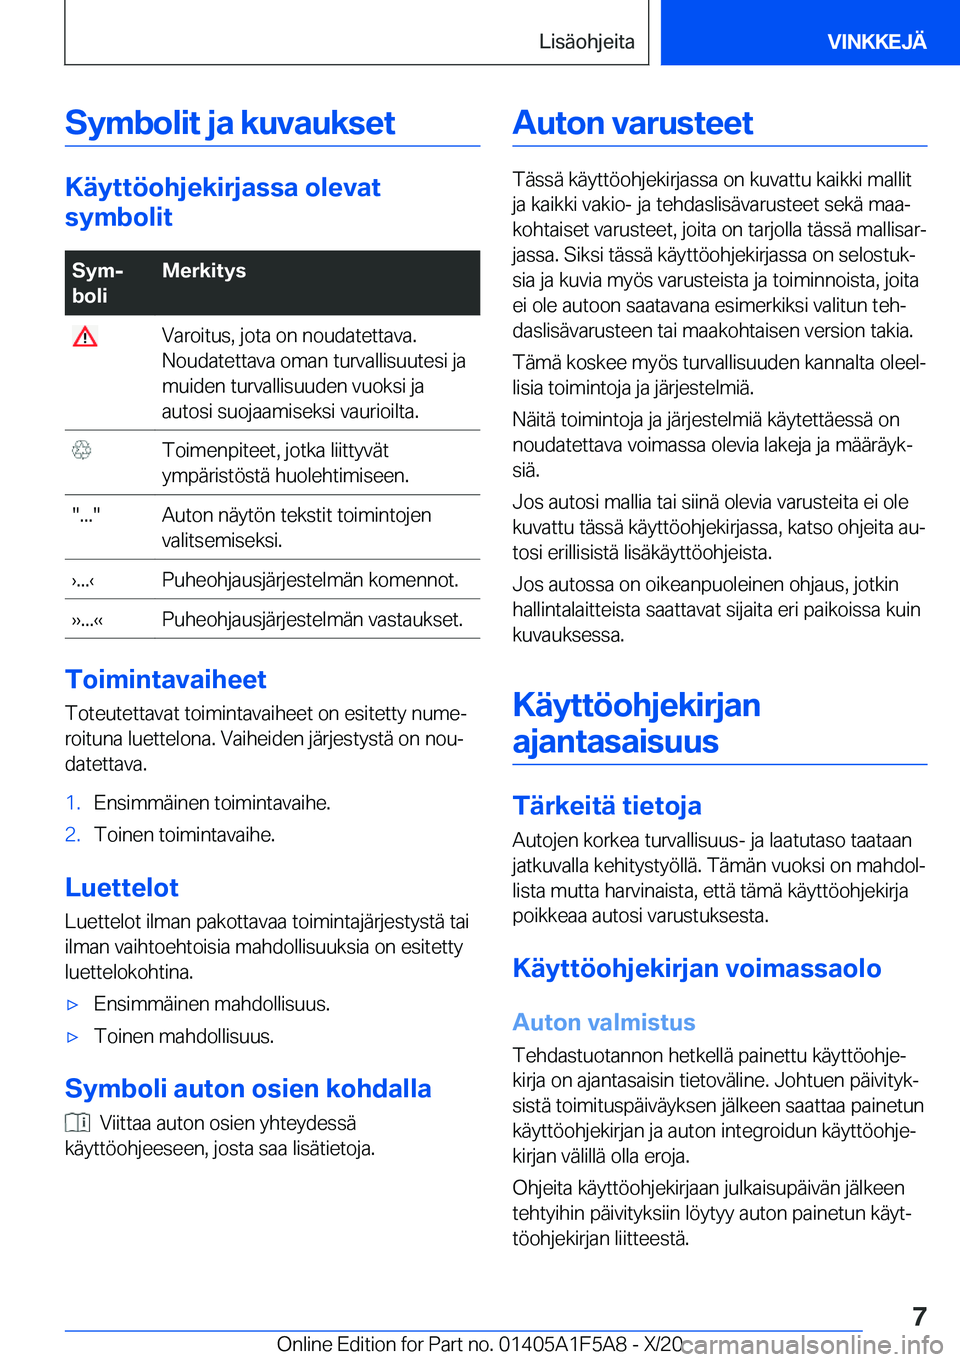 BMW X3 M 2021  Omistajan Käsikirja (in Finnish) �S�y�m�b�o�l�i�t��j�a��k�u�v�a�u�k�s�e�t
�K�